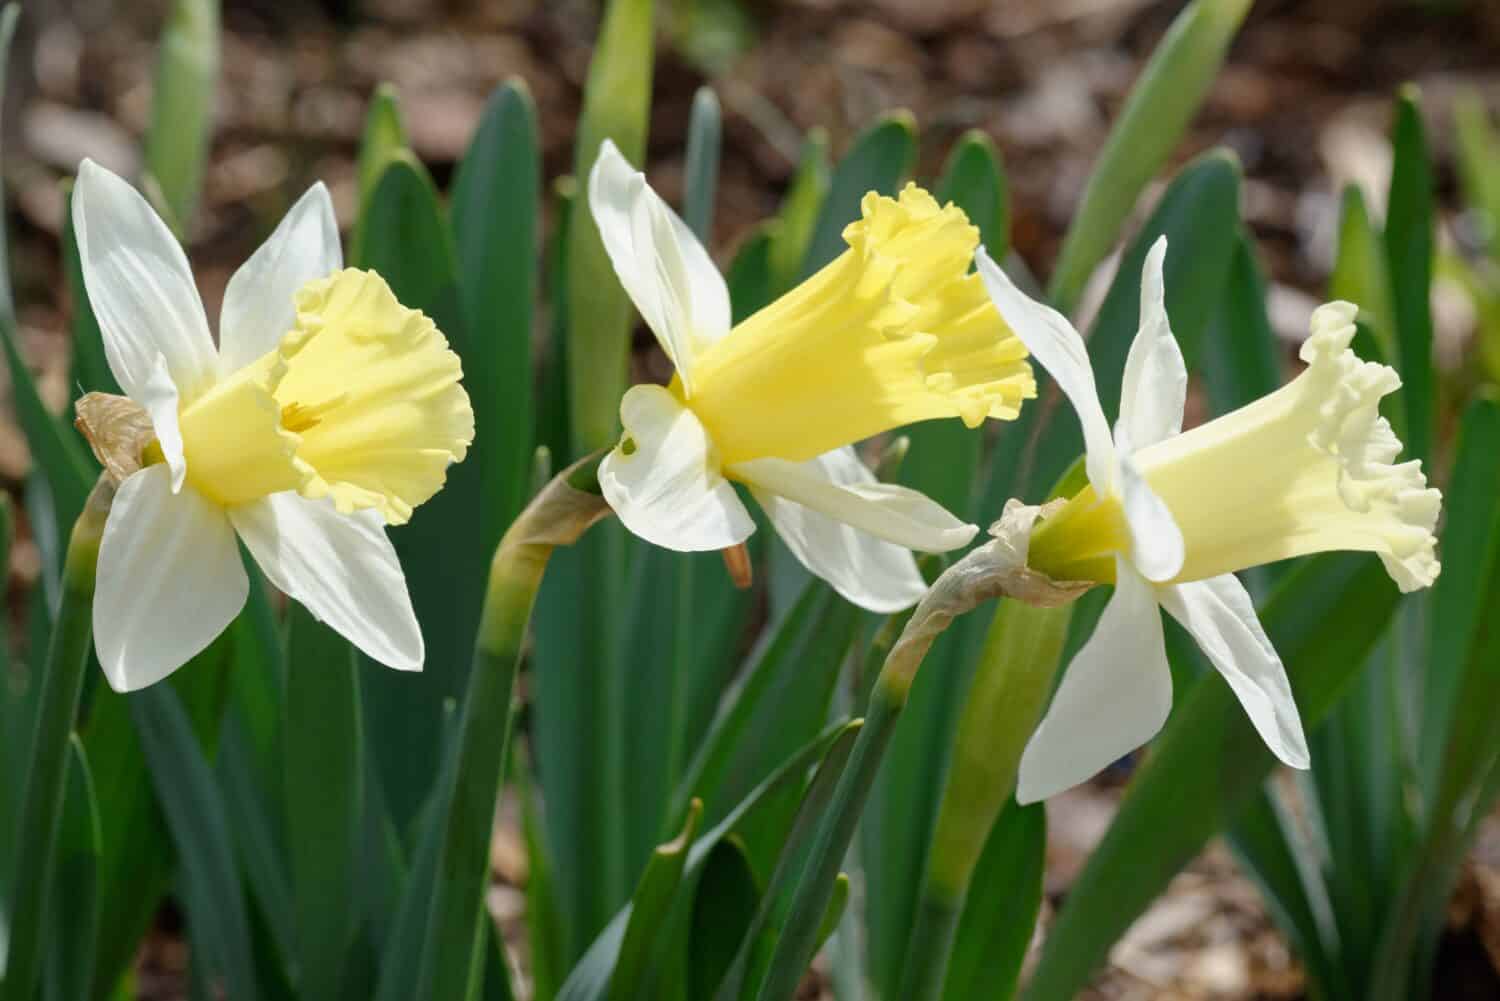 Narcissus 'Broughshane' è un narciso della Divisione 1 (Trumpet daffodil) con corona bianca e tromba gialla